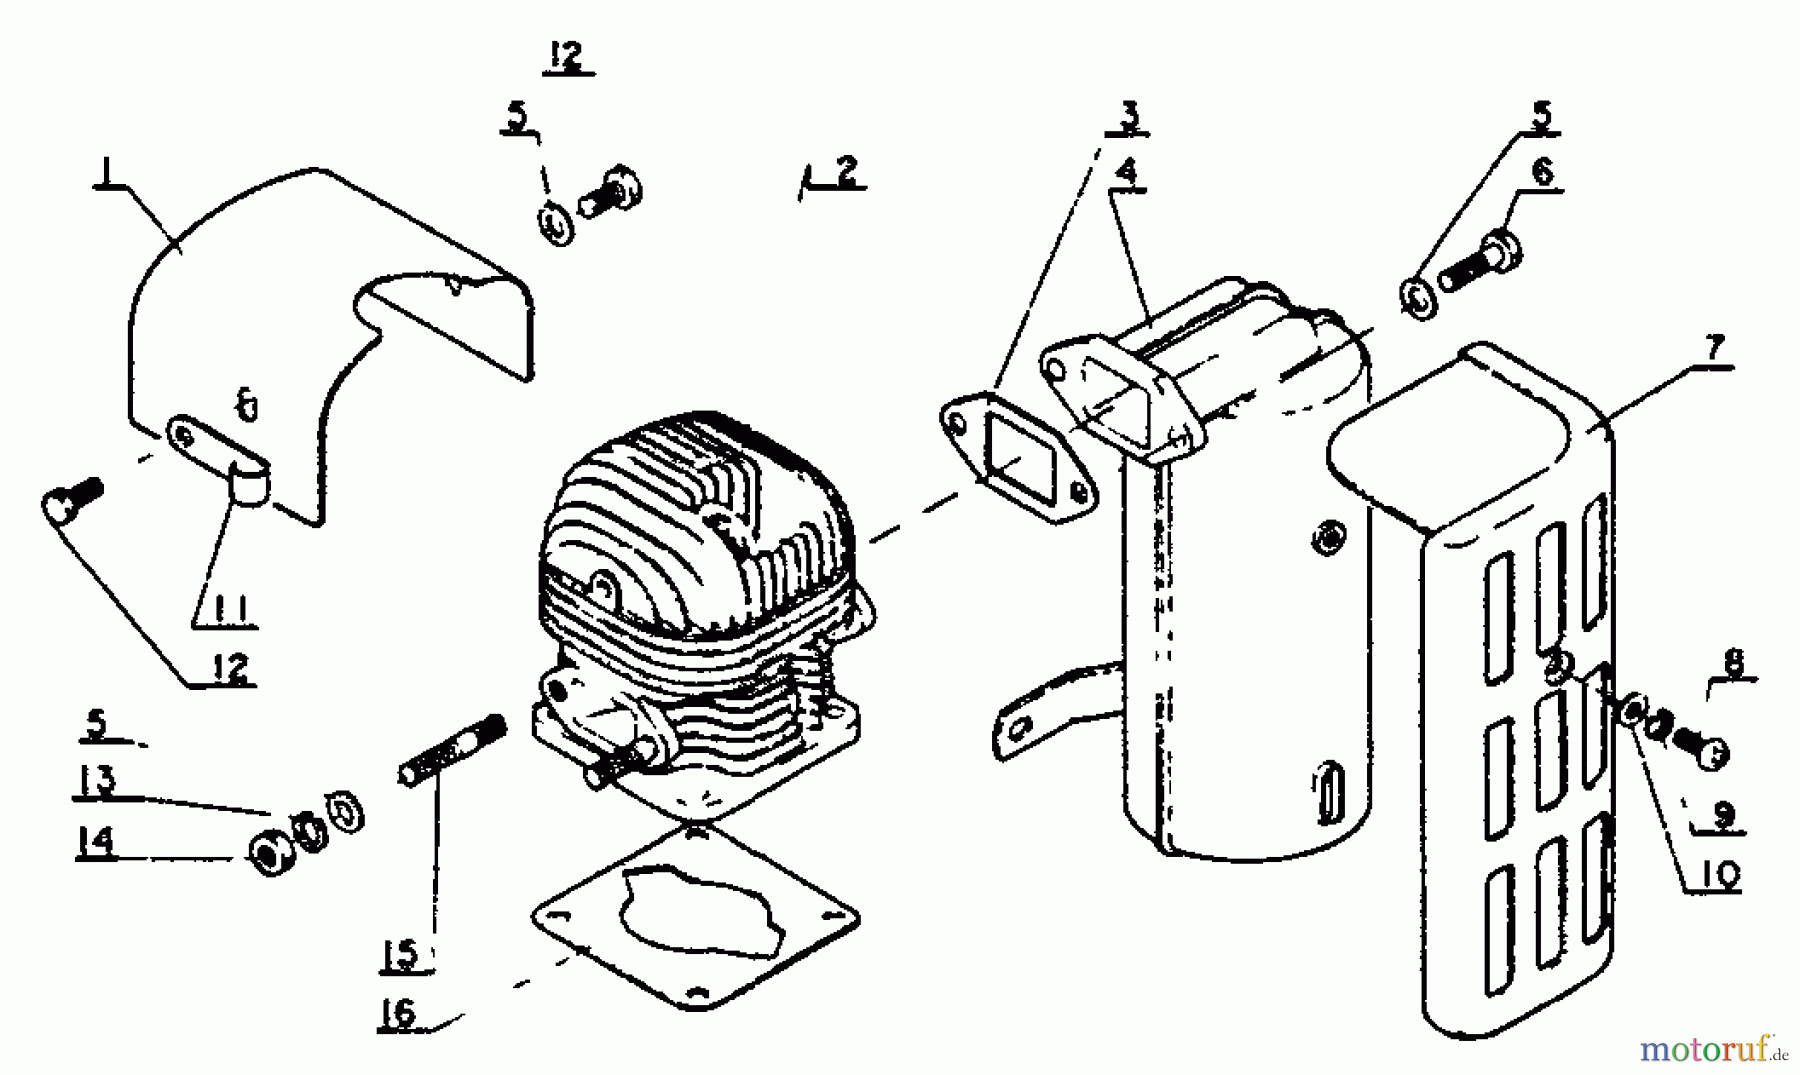  Echo Bläser / Sauger / Häcksler / Mulchgeräte	  PB-9 - Echo Back Pack Blower Cylinder, Muffler